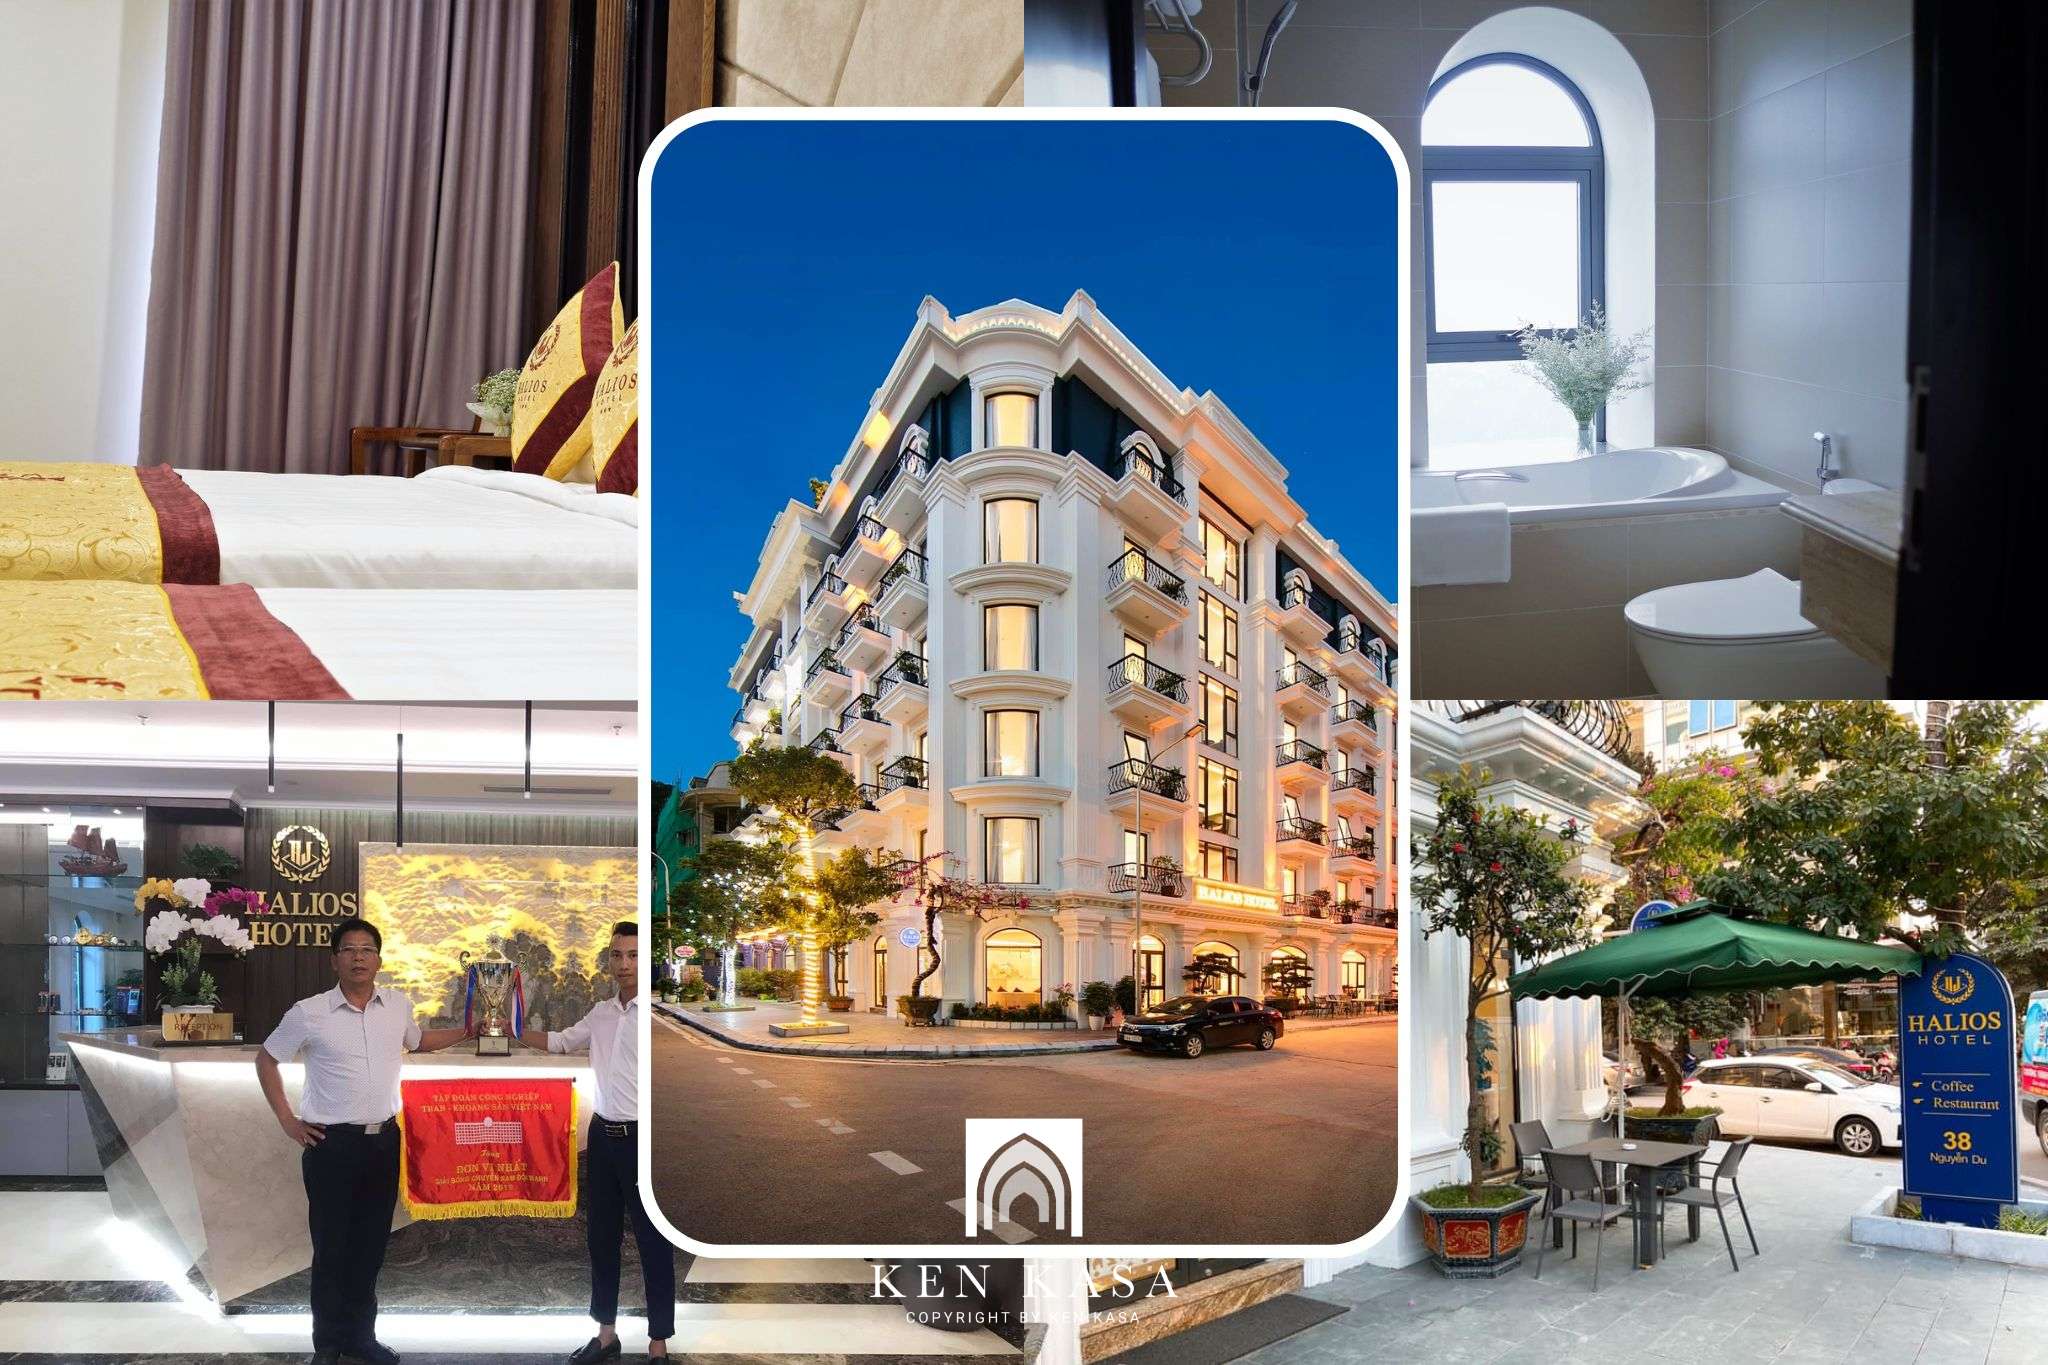 Review Halios Ha Long Hotel - “Biệt thự” 3 sao với phong cách thiết kế hiện đại, sang trọng